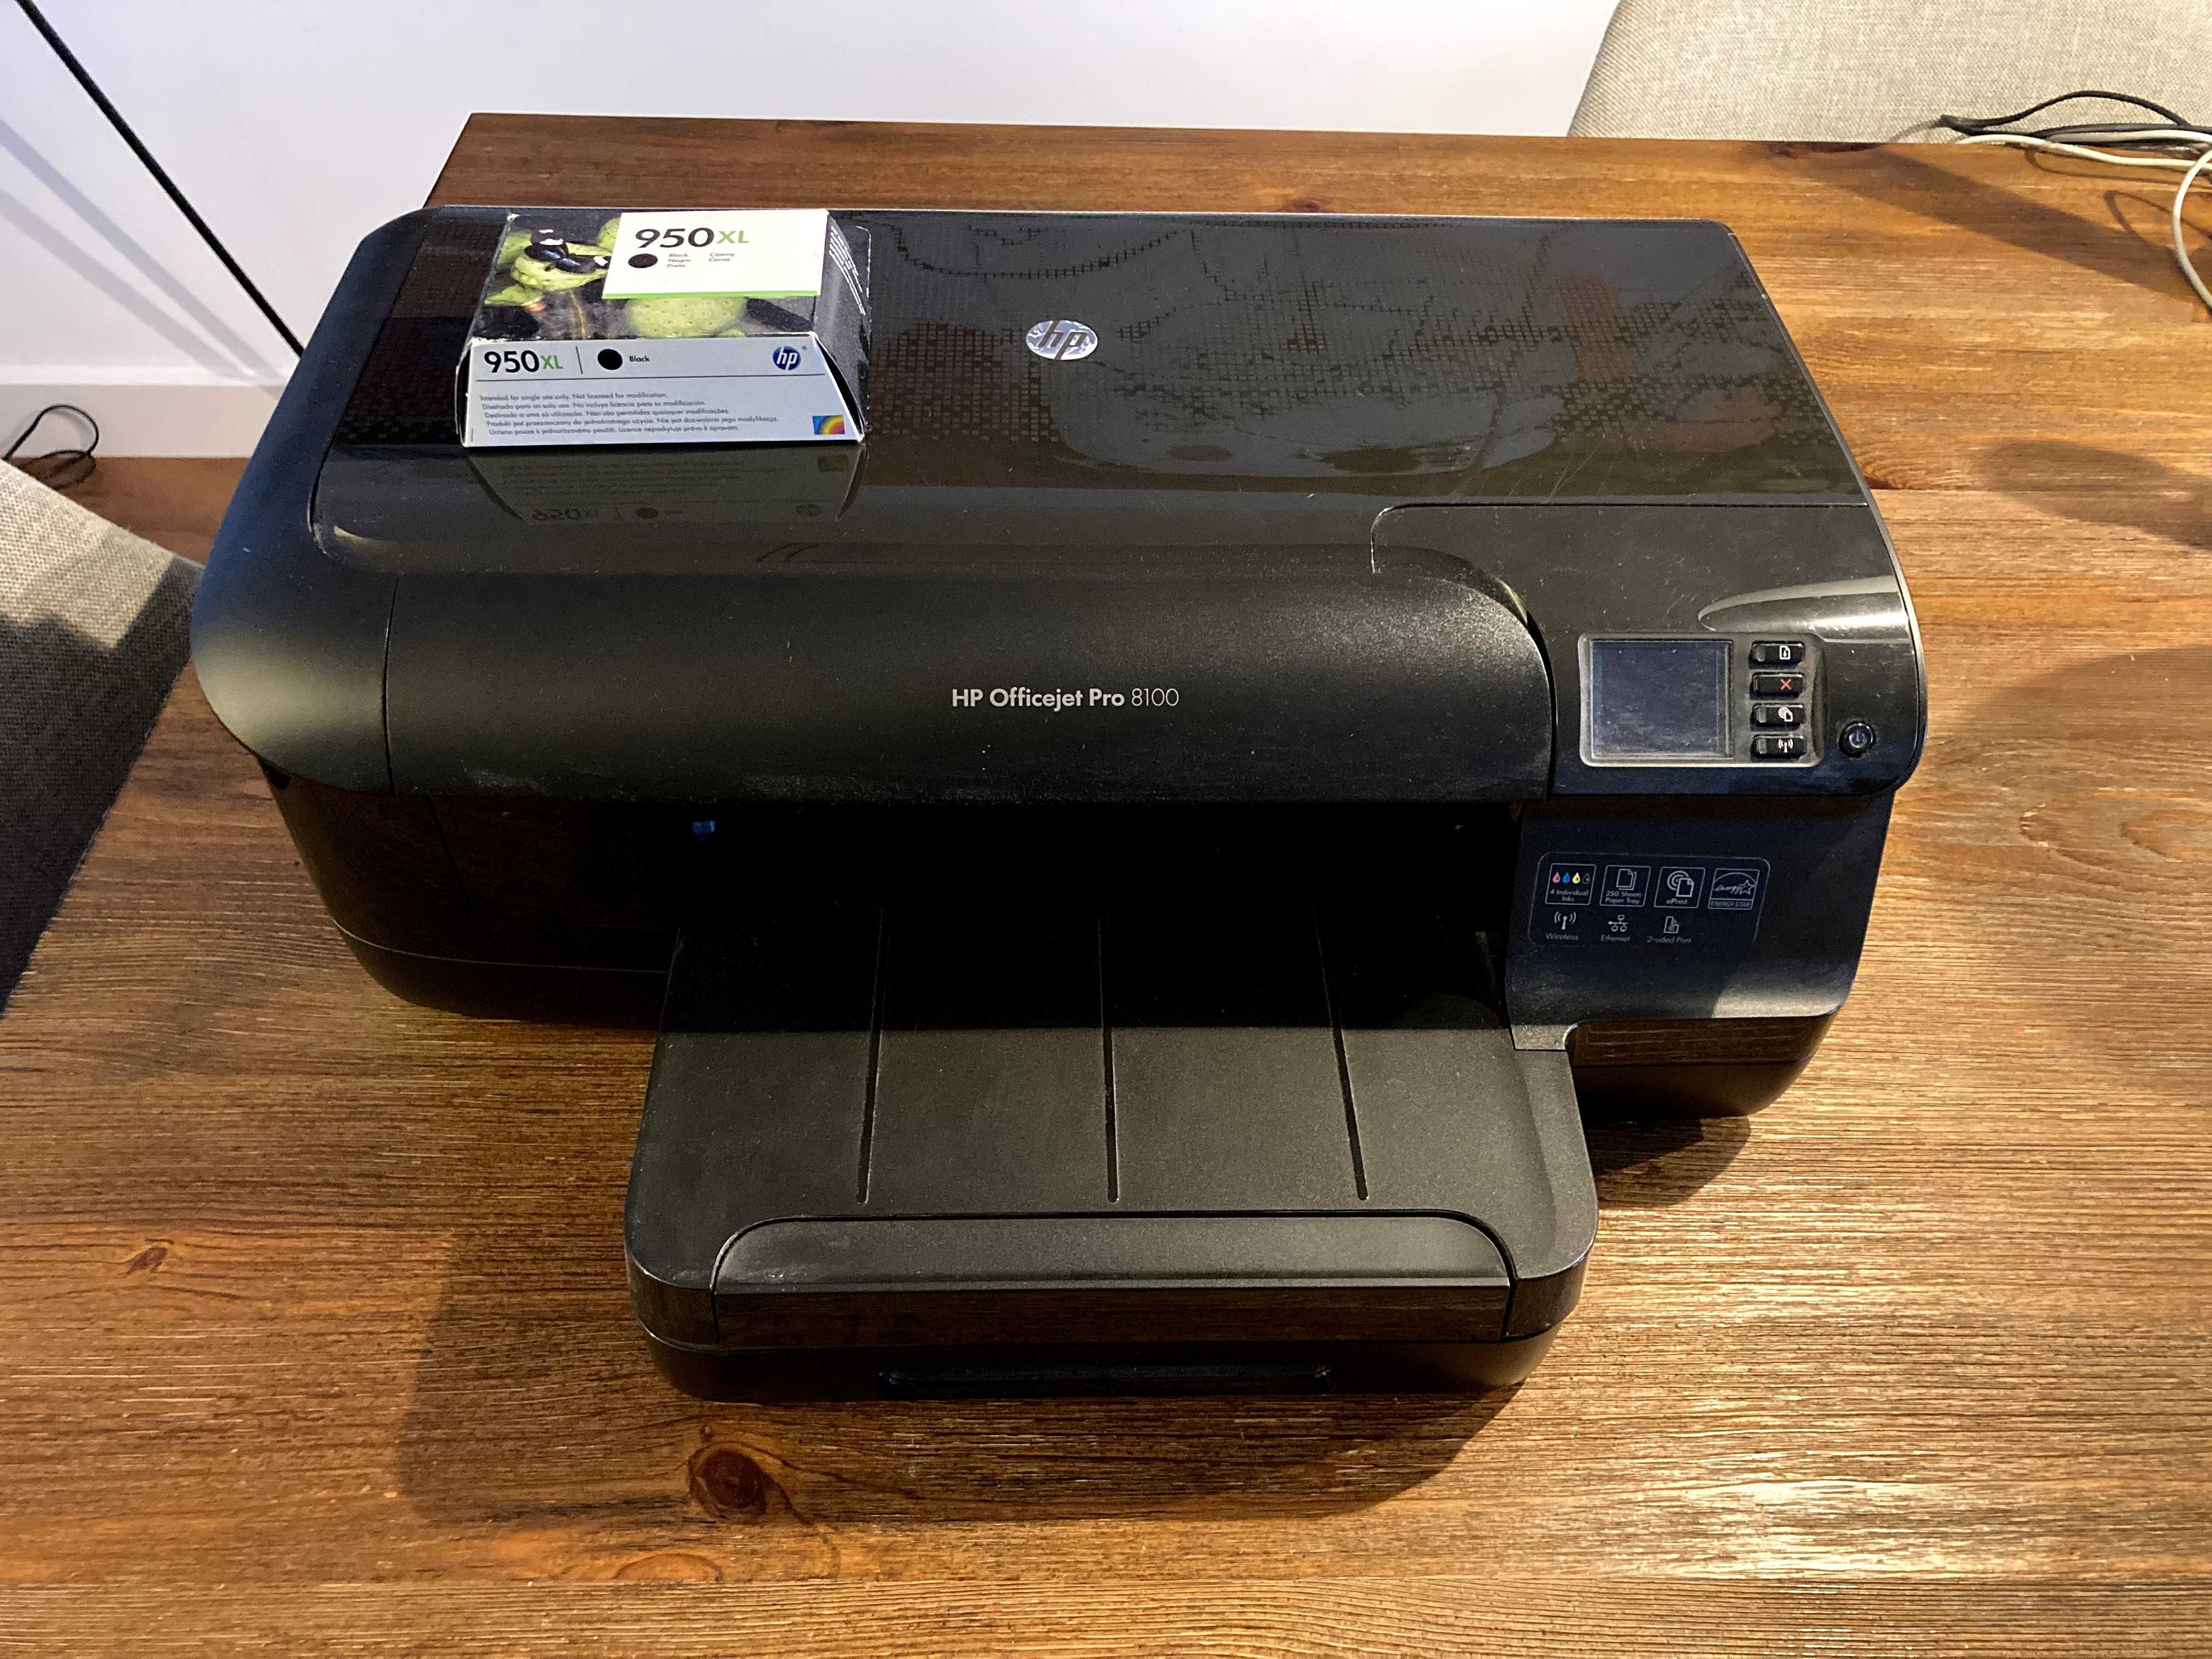 Impressora HP Officejet Pro 8100 bom estado (vendo porque já não uso!)